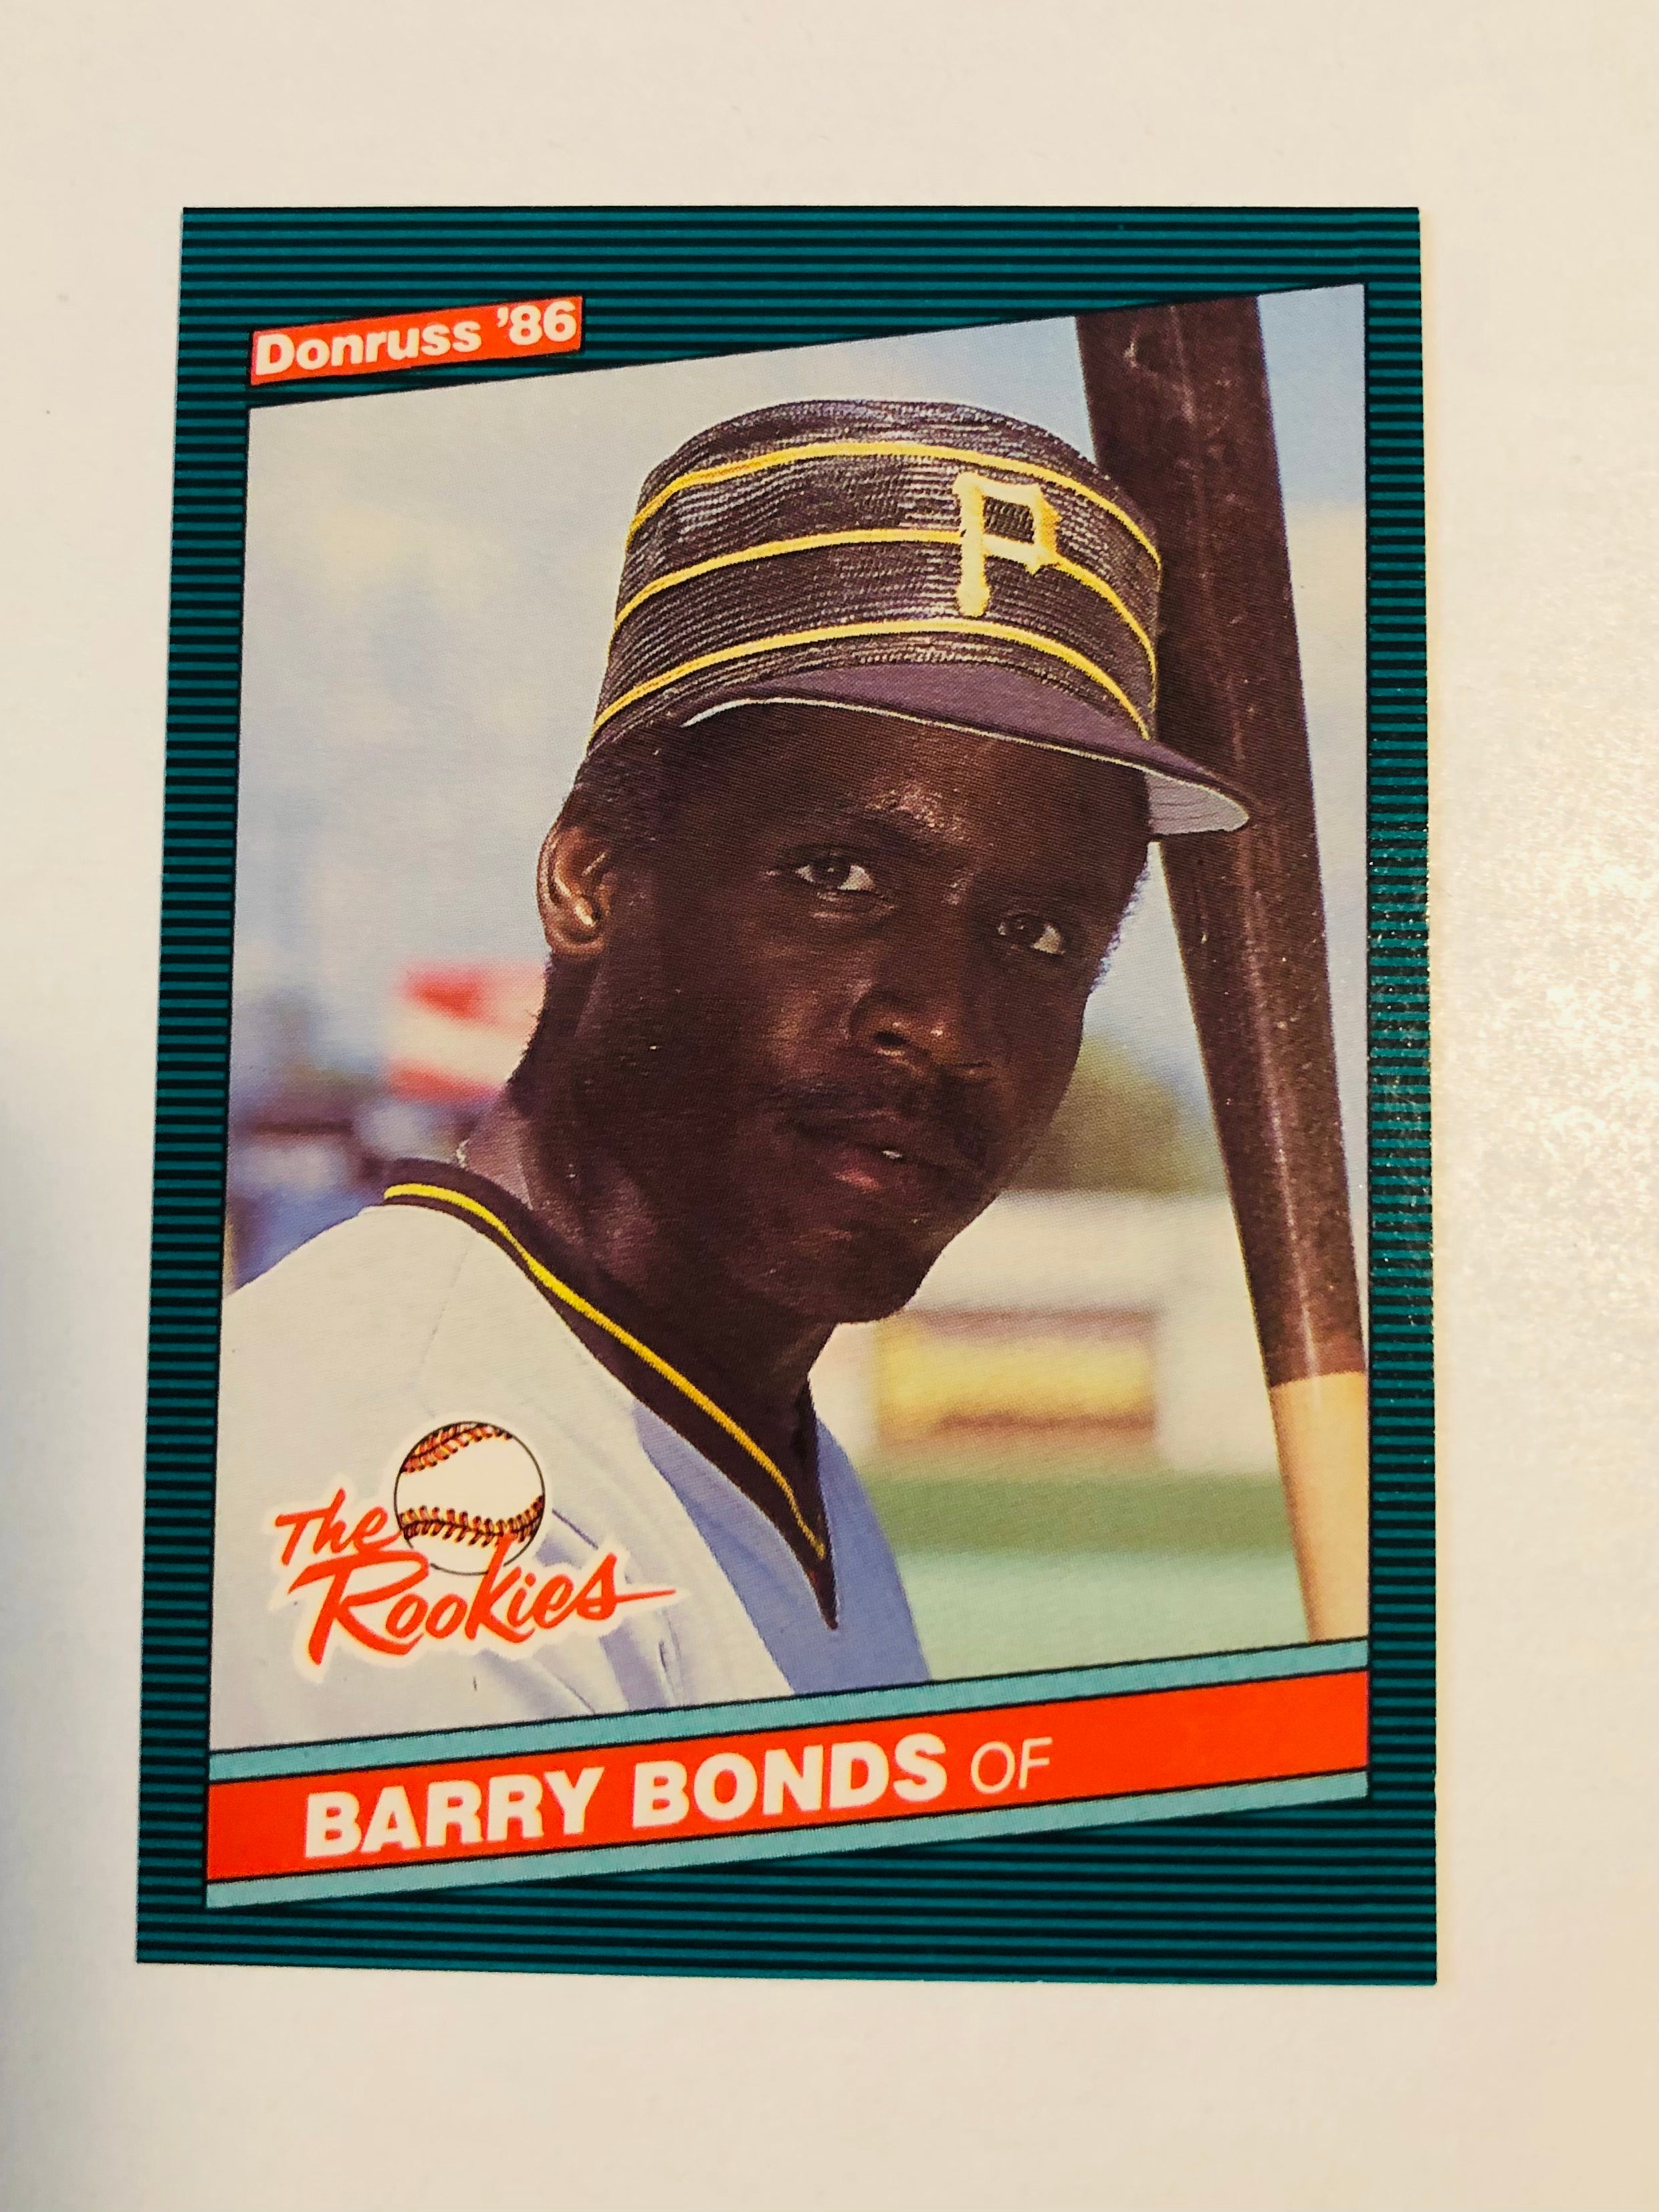 Barry Bonds Donruss The Rookies baseball card 1986